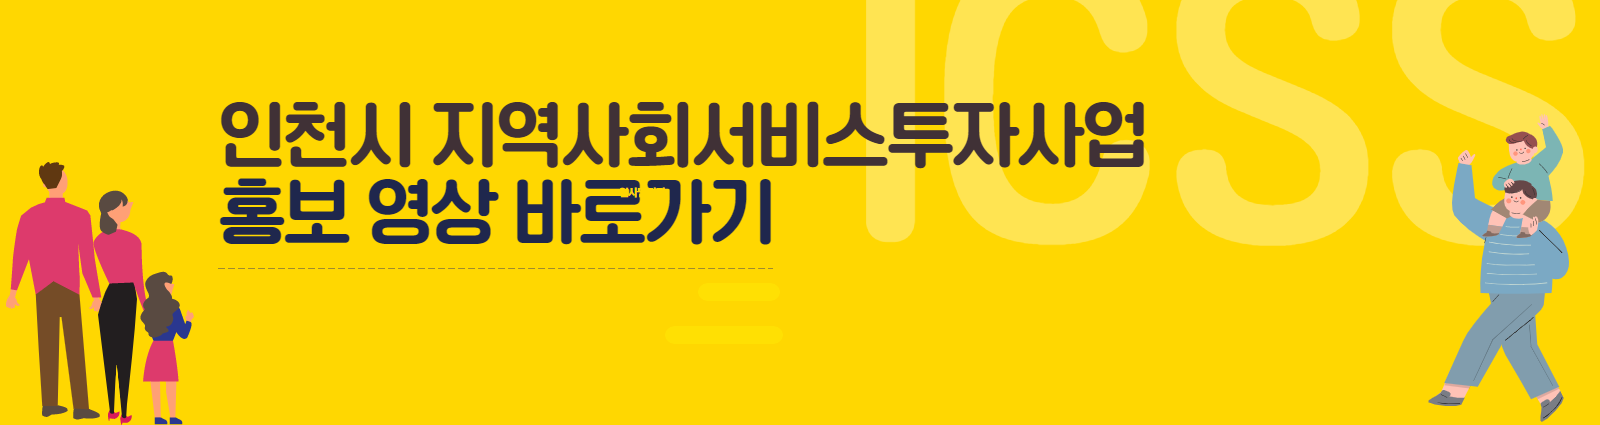 인천시 지역사회서비스투자사업 홍보 영상 바로가기